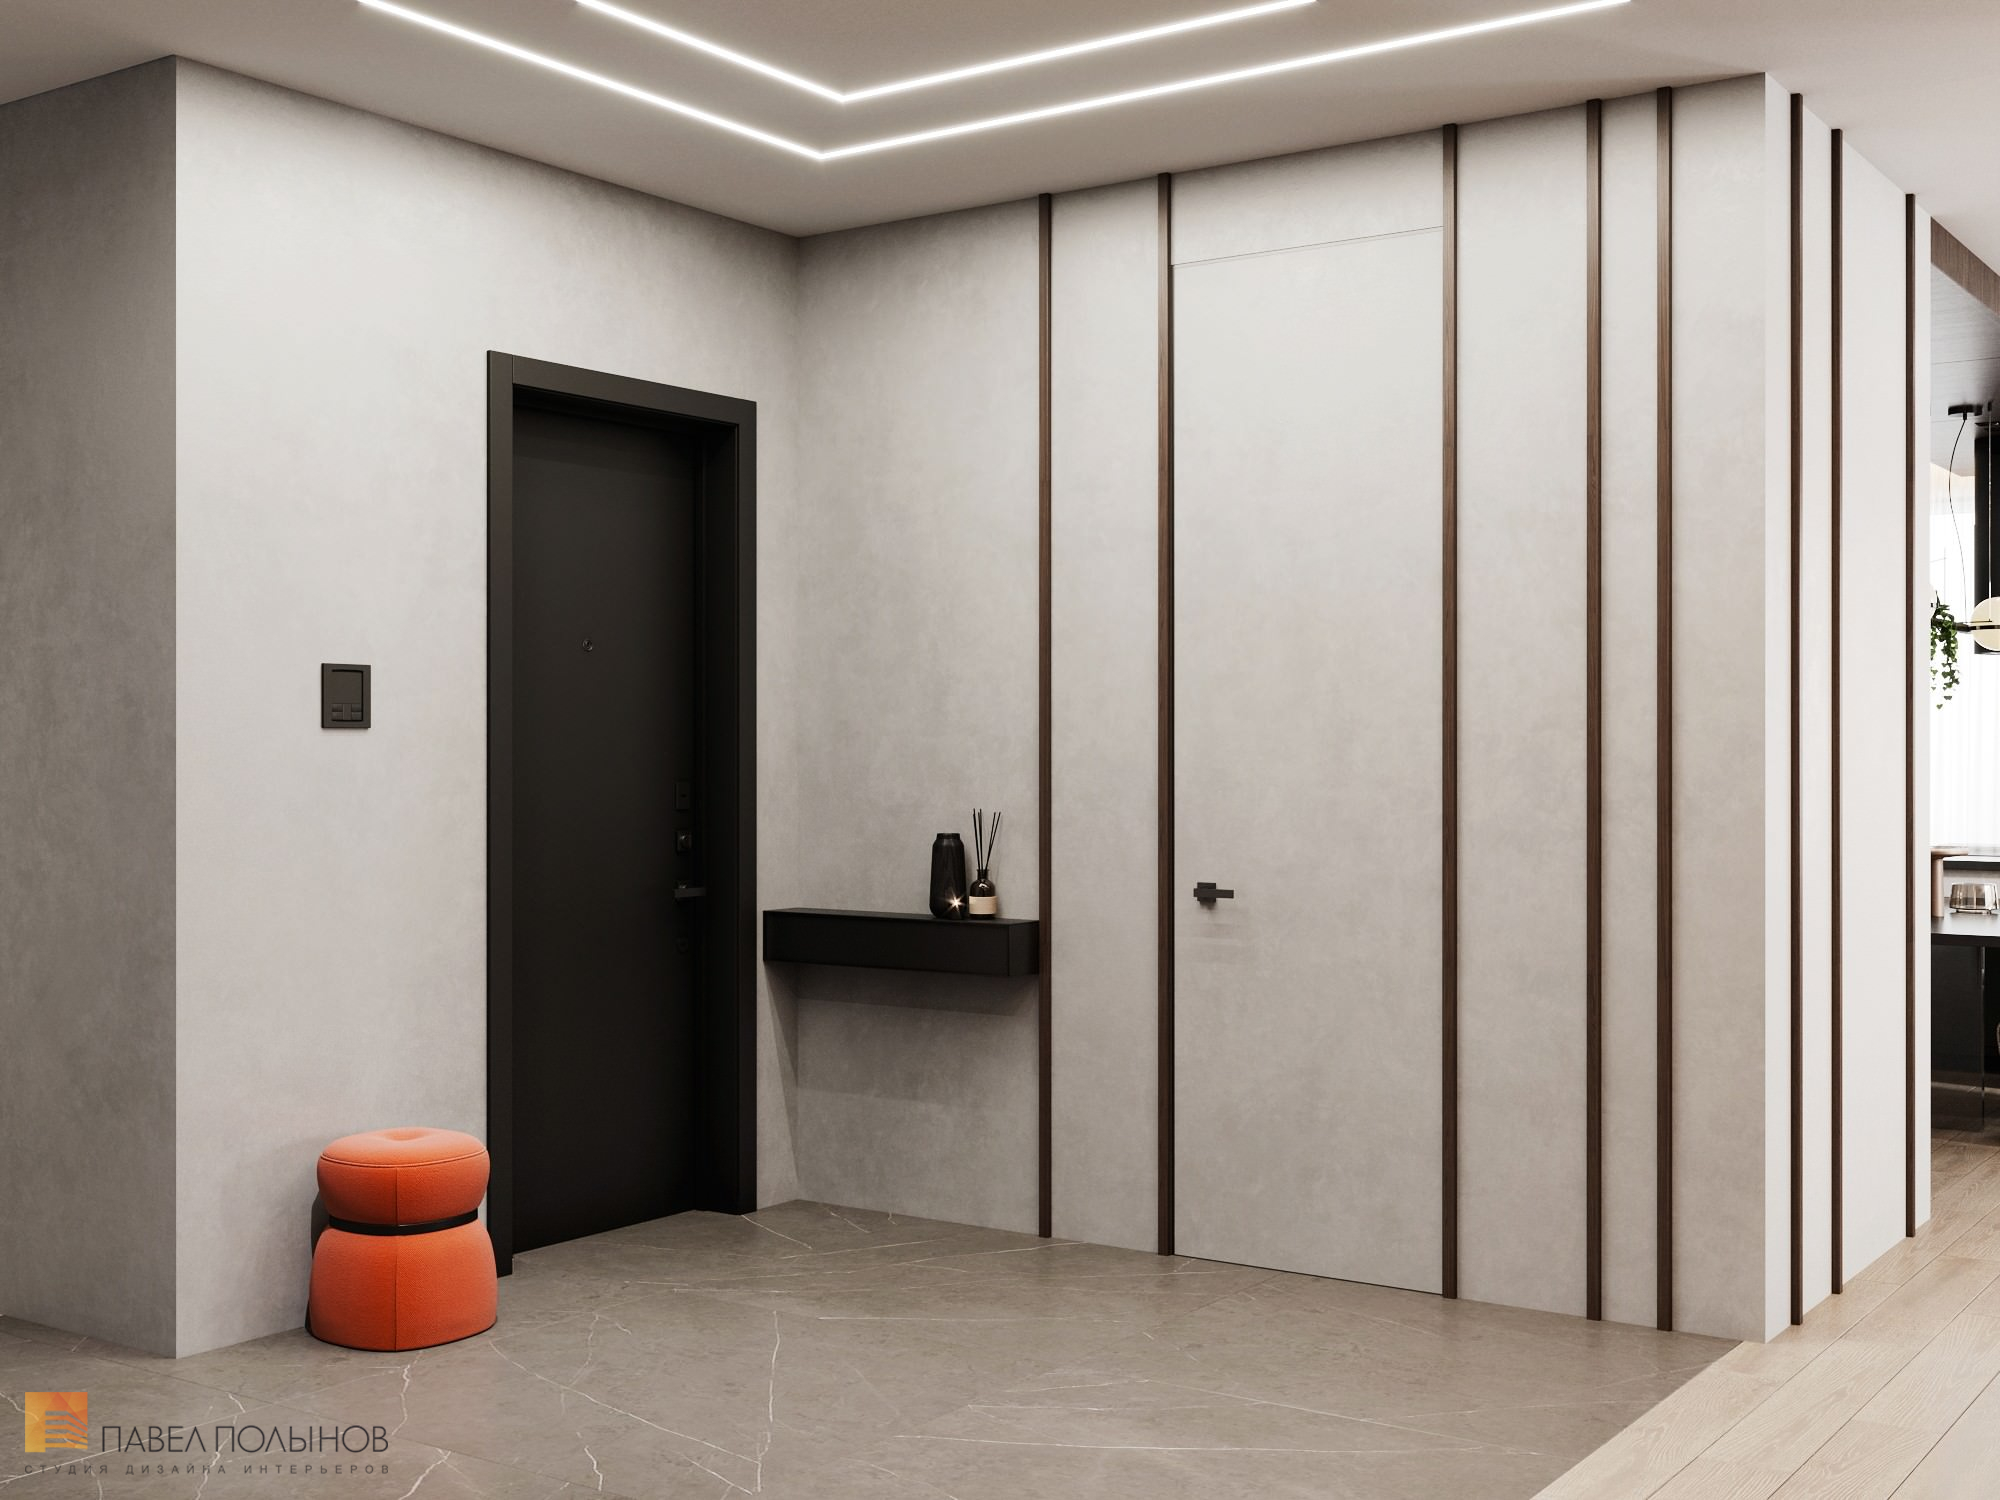 Фото интерьер прихожей из проекта «Дизайн интерьера квартиры в ЖК «Крестовский Deluxe», современный стиль, 233 кв.м.»